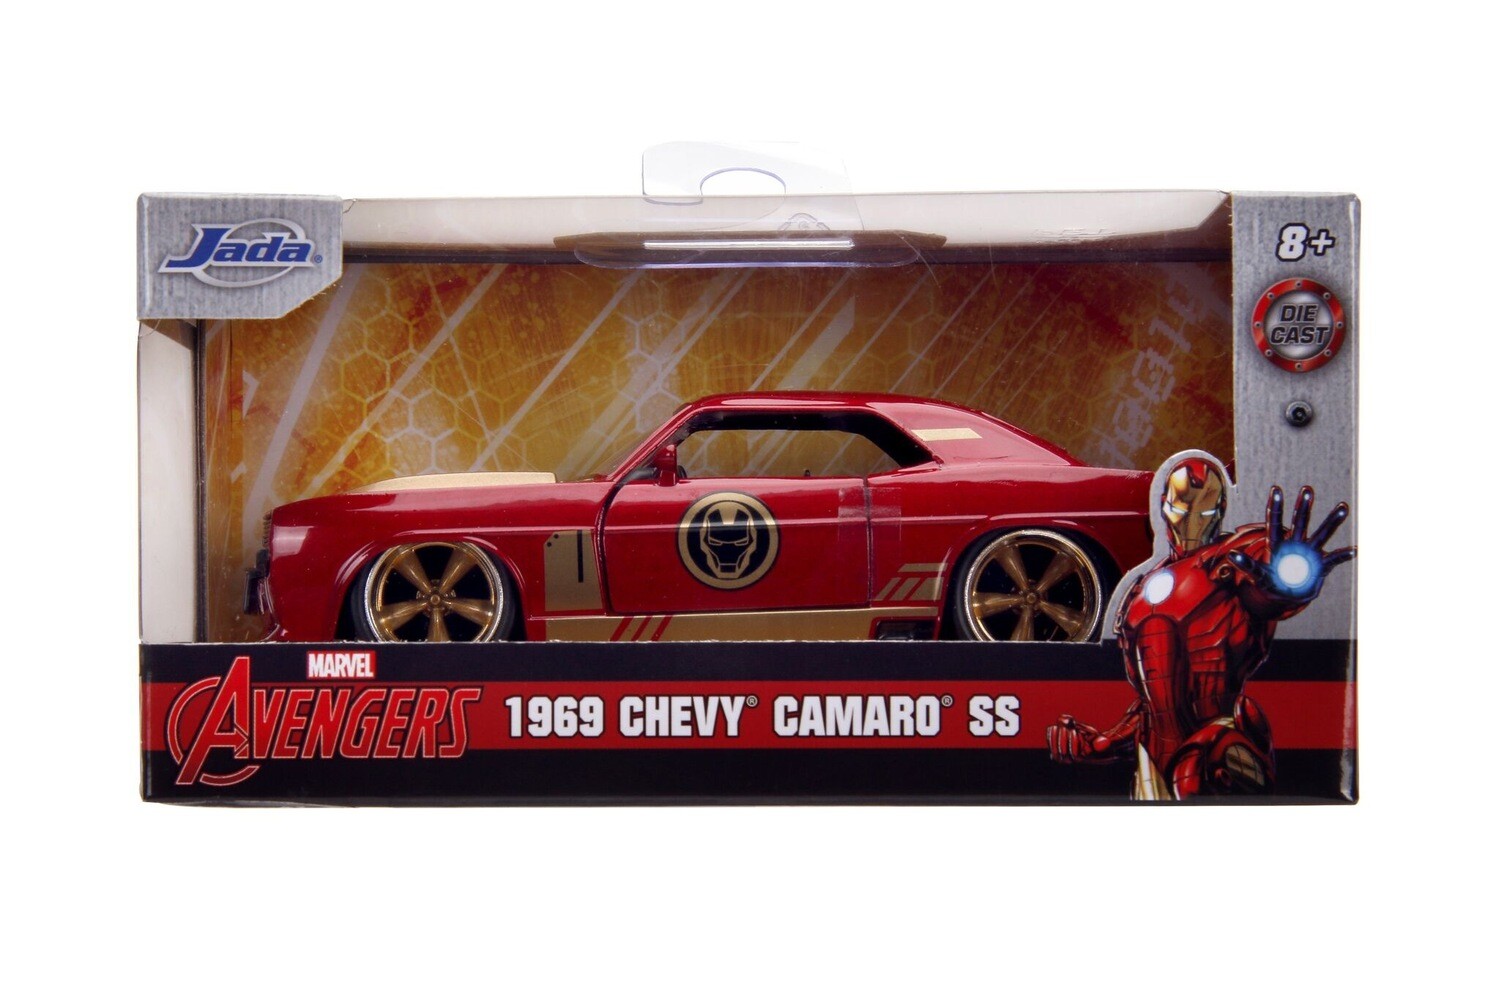 1969 Chevy Camaro Iron Man